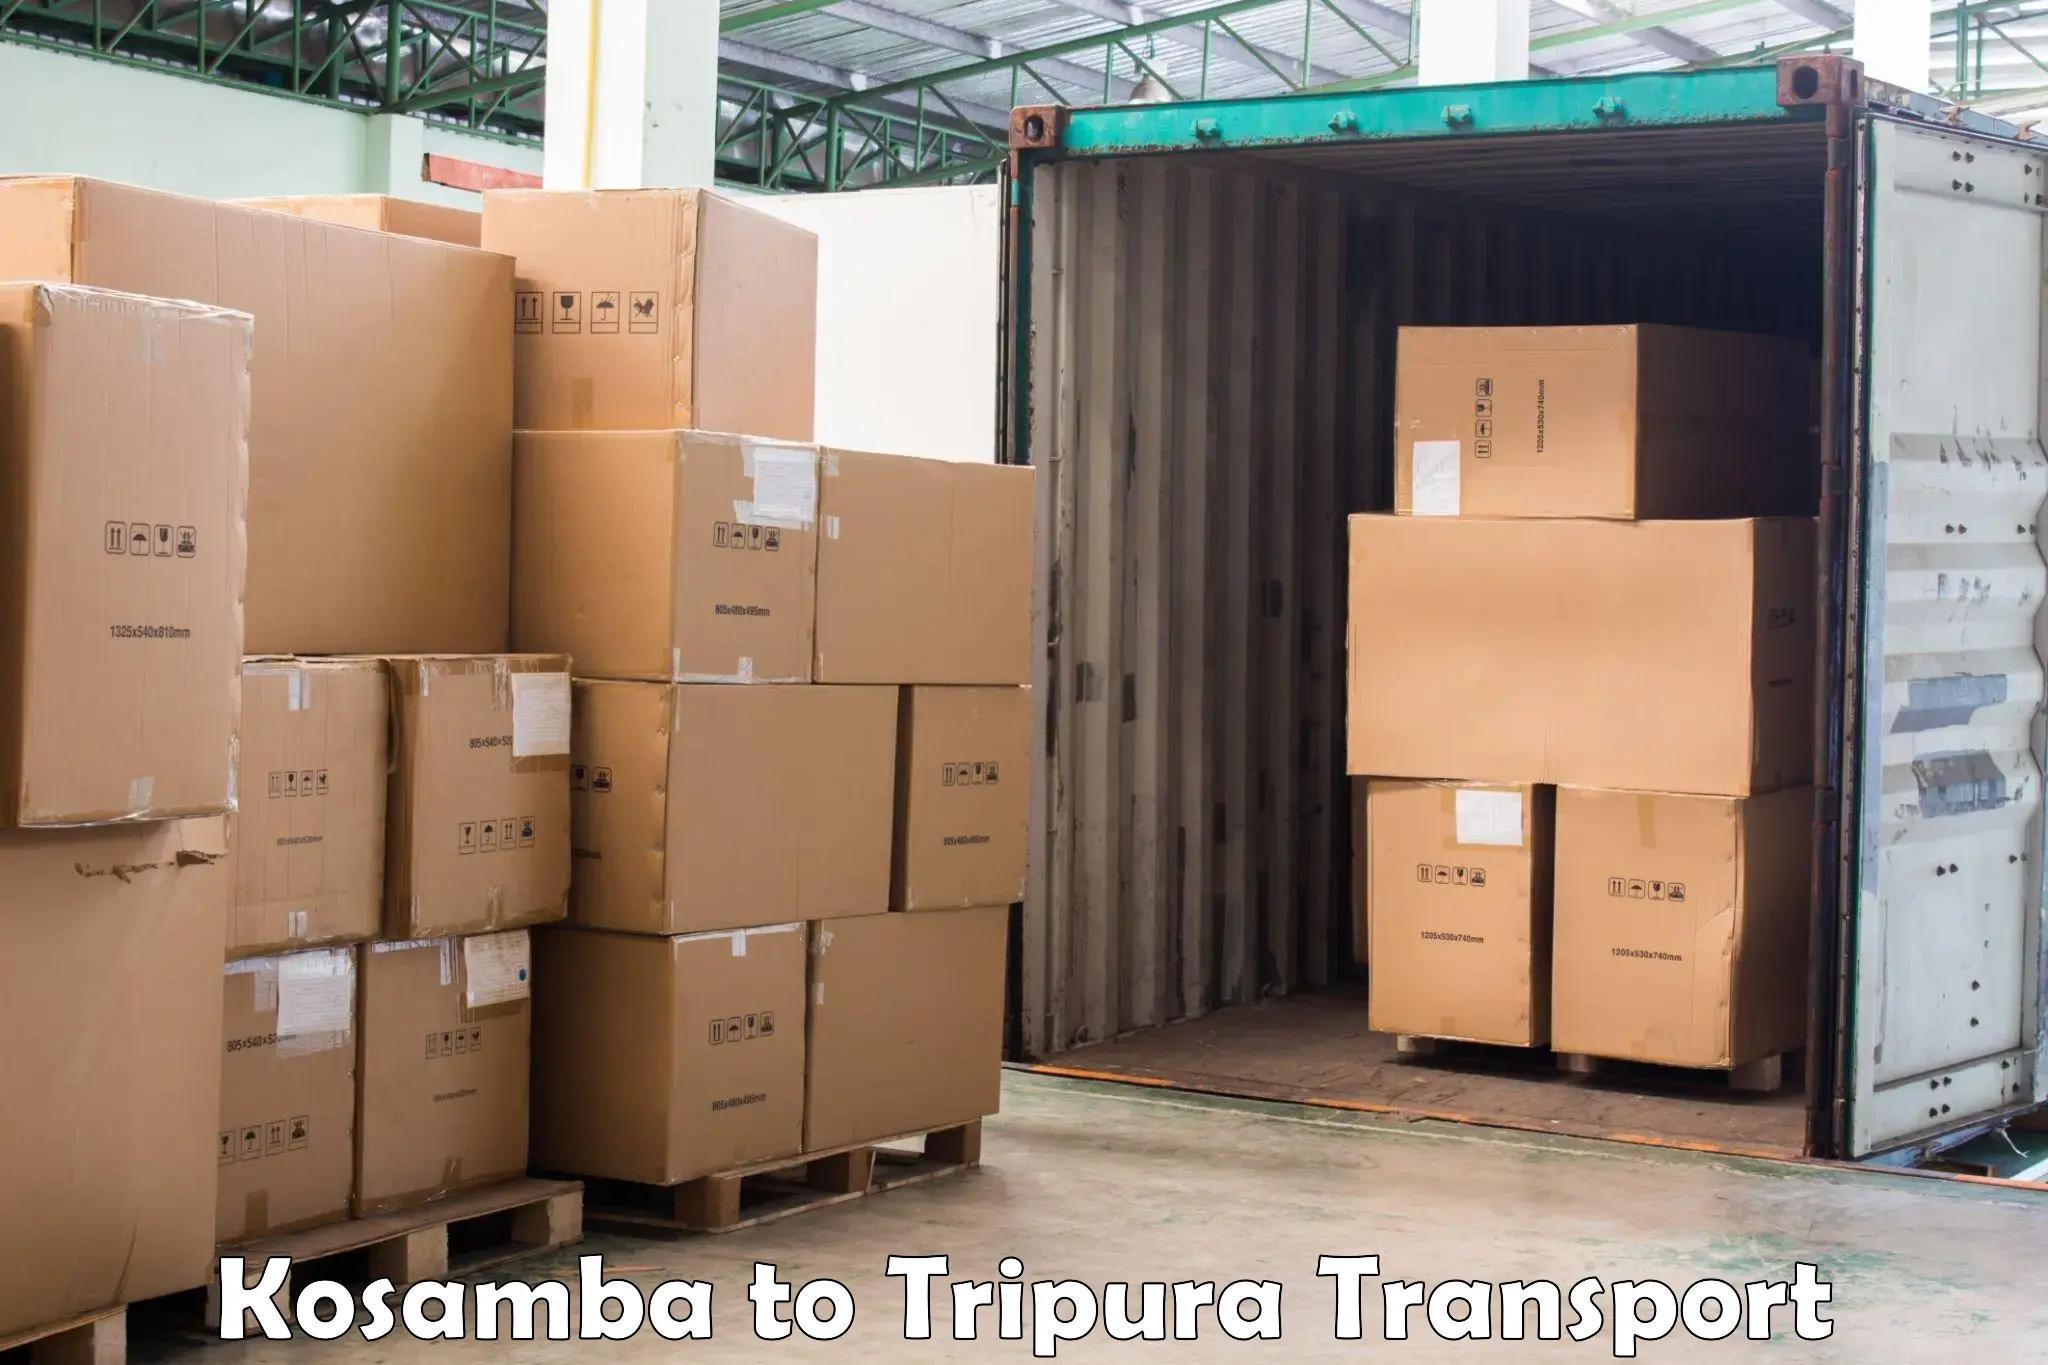 Interstate transport services Kosamba to Aambasa